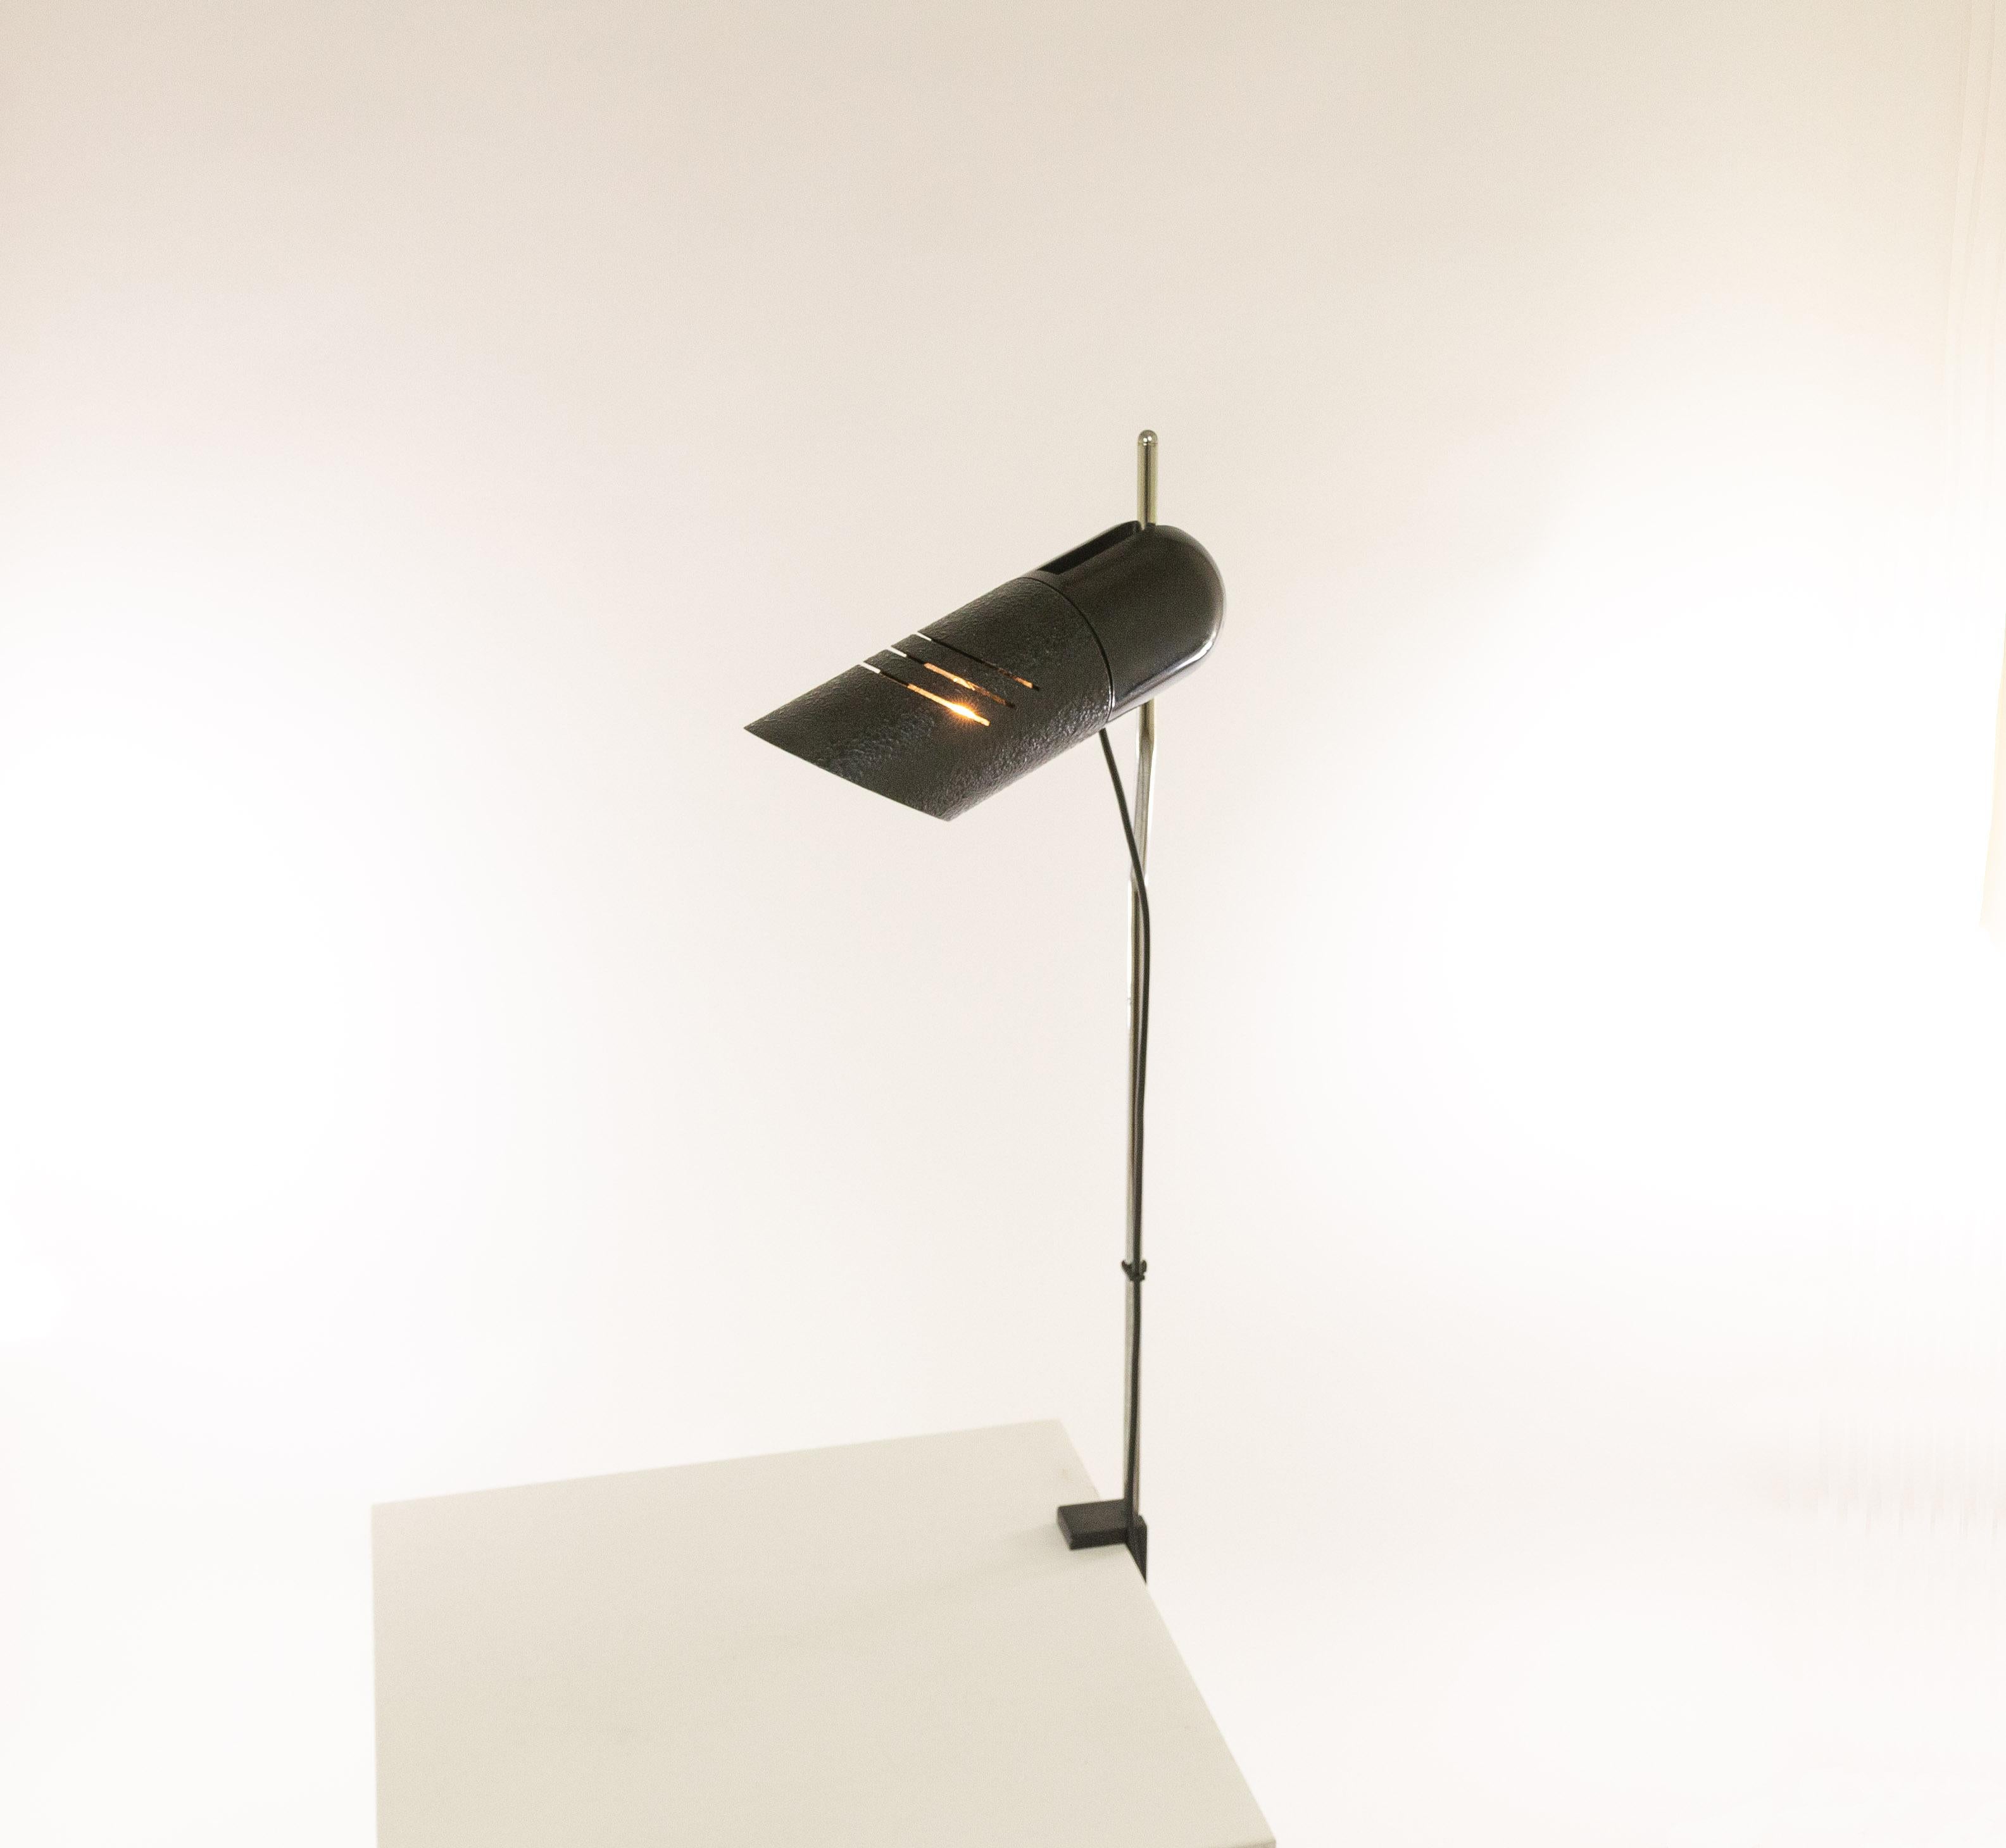 Lampe de table réglable Galdino de Carlo Urbinati pour Harvey Guzzini, 1972.

Galdino a été produit en plusieurs versions, comme lampe de table, applique et lampadaire (avec un et deux spots). Il s'agit de la rare lampe à pince qui peut être